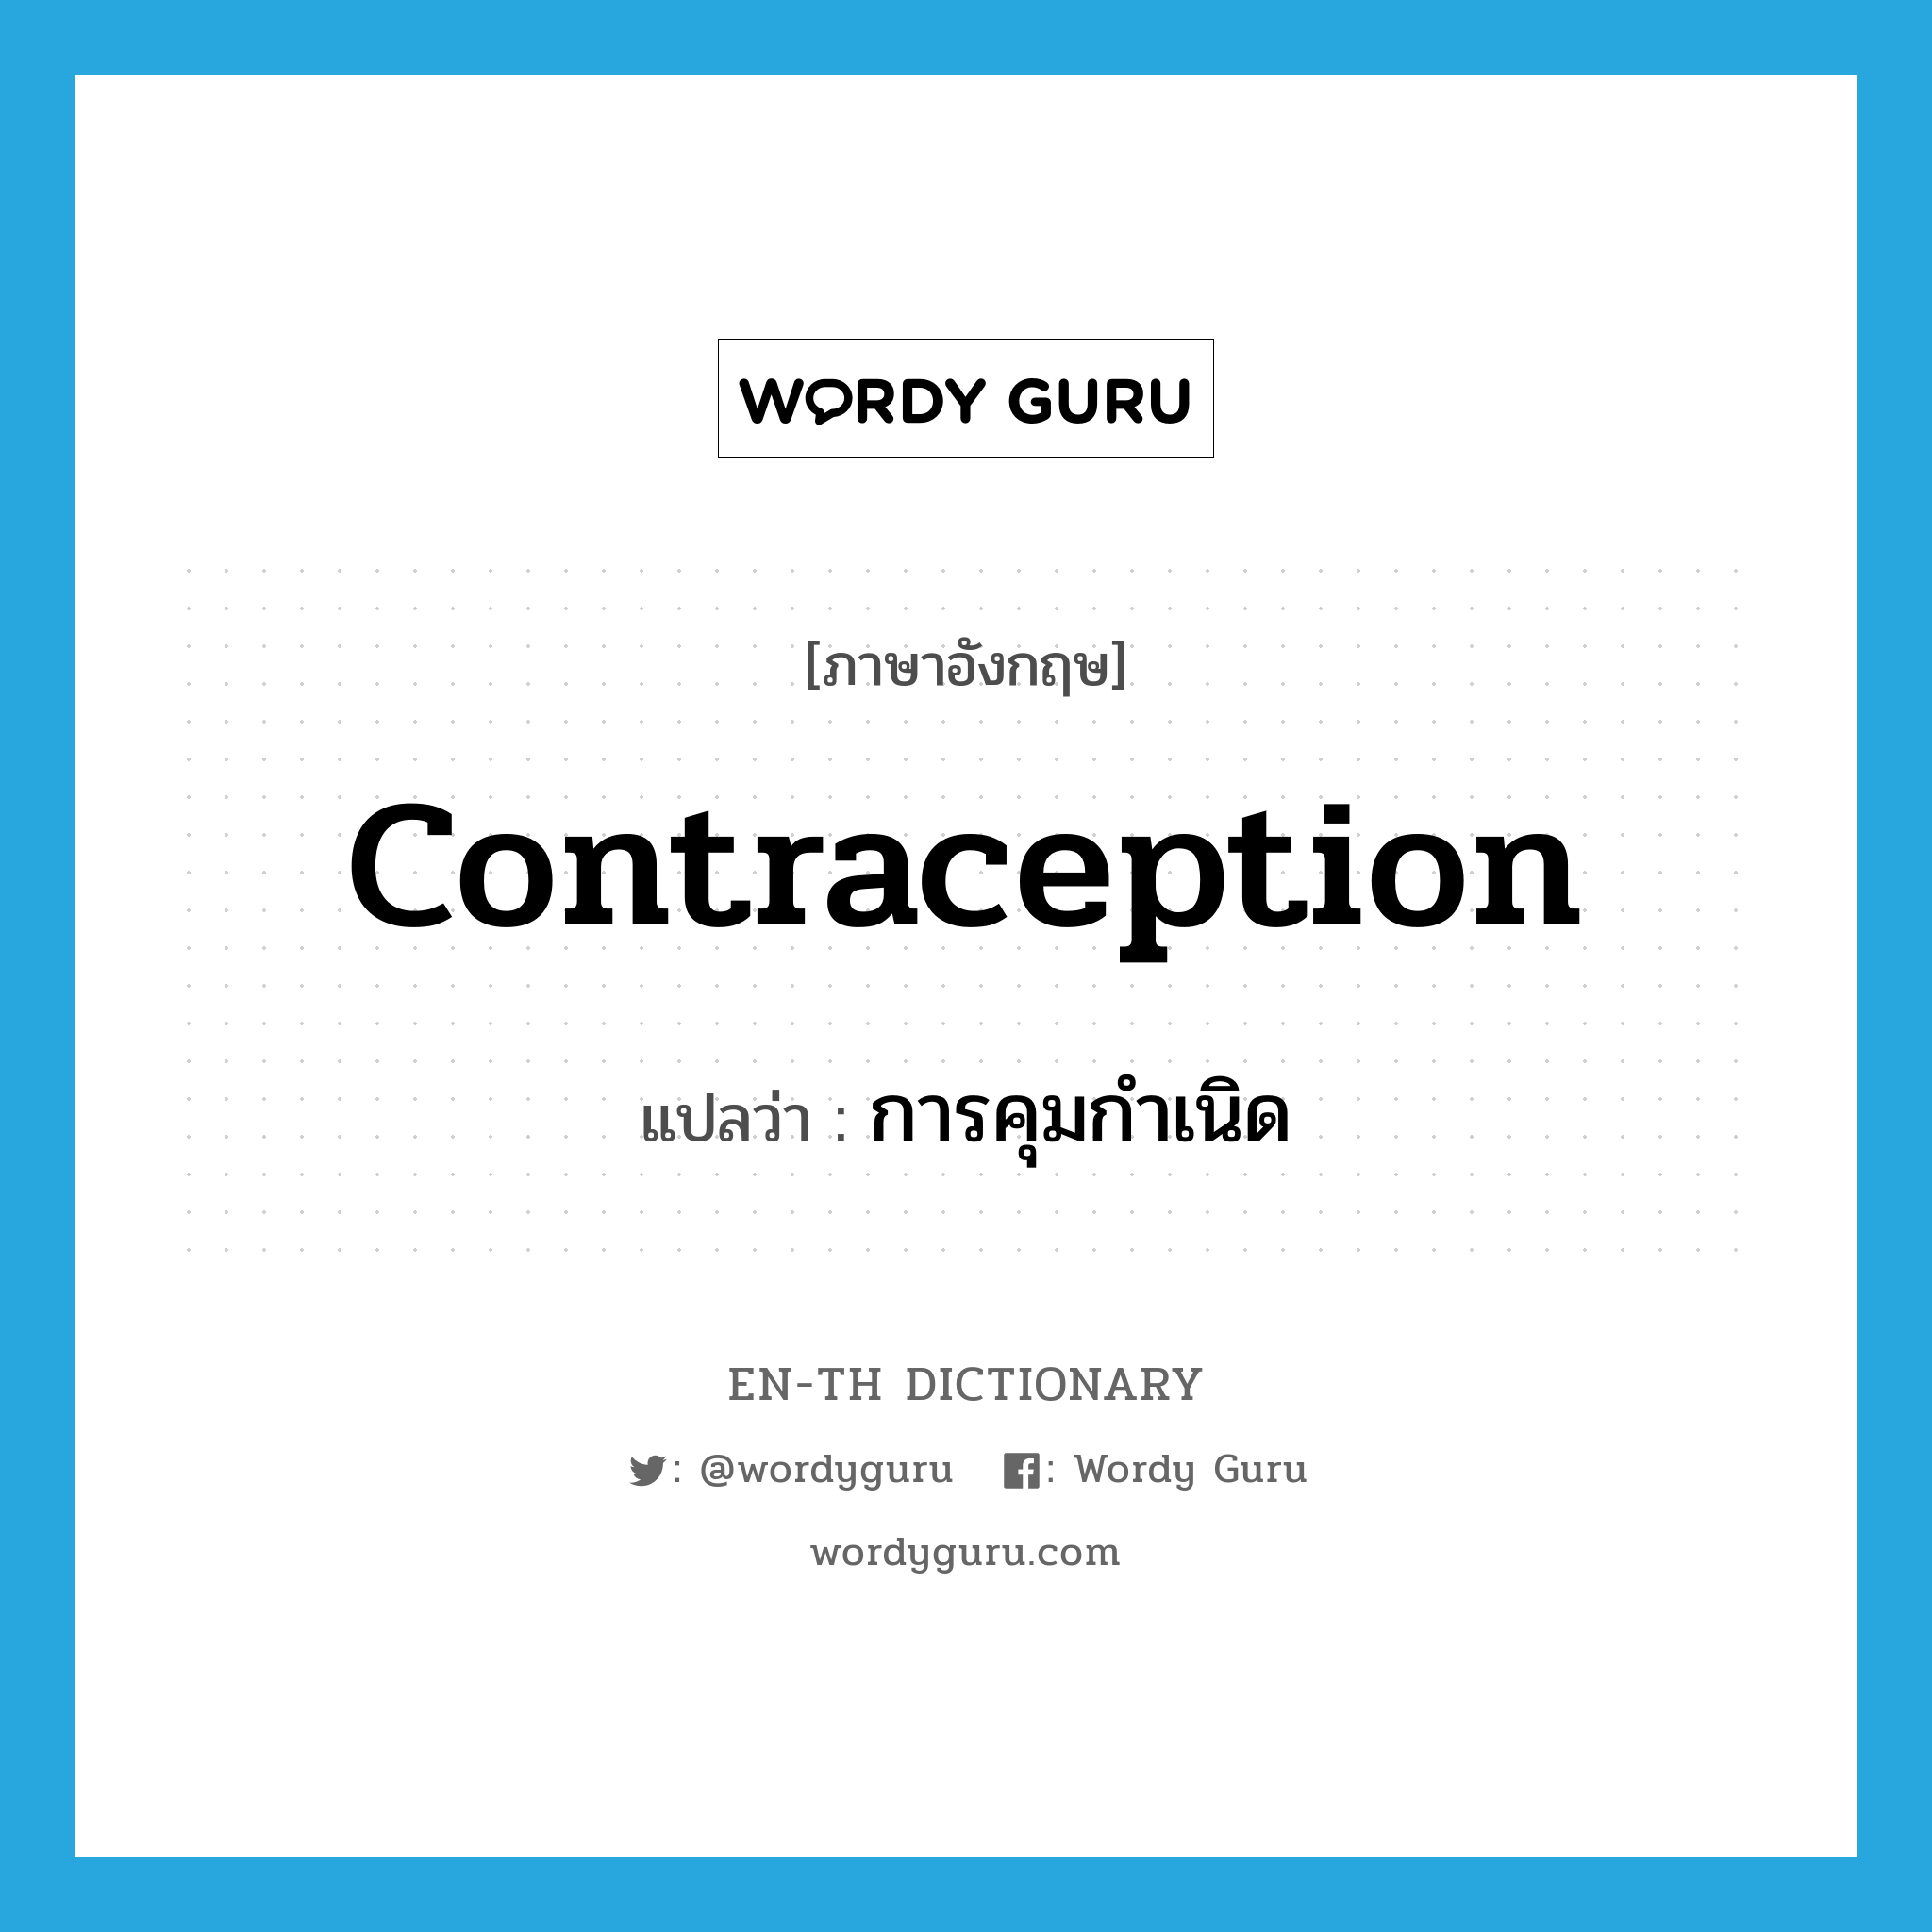 การคุมกำเนิด ภาษาอังกฤษ?, คำศัพท์ภาษาอังกฤษ การคุมกำเนิด แปลว่า contraception ประเภท N หมวด N